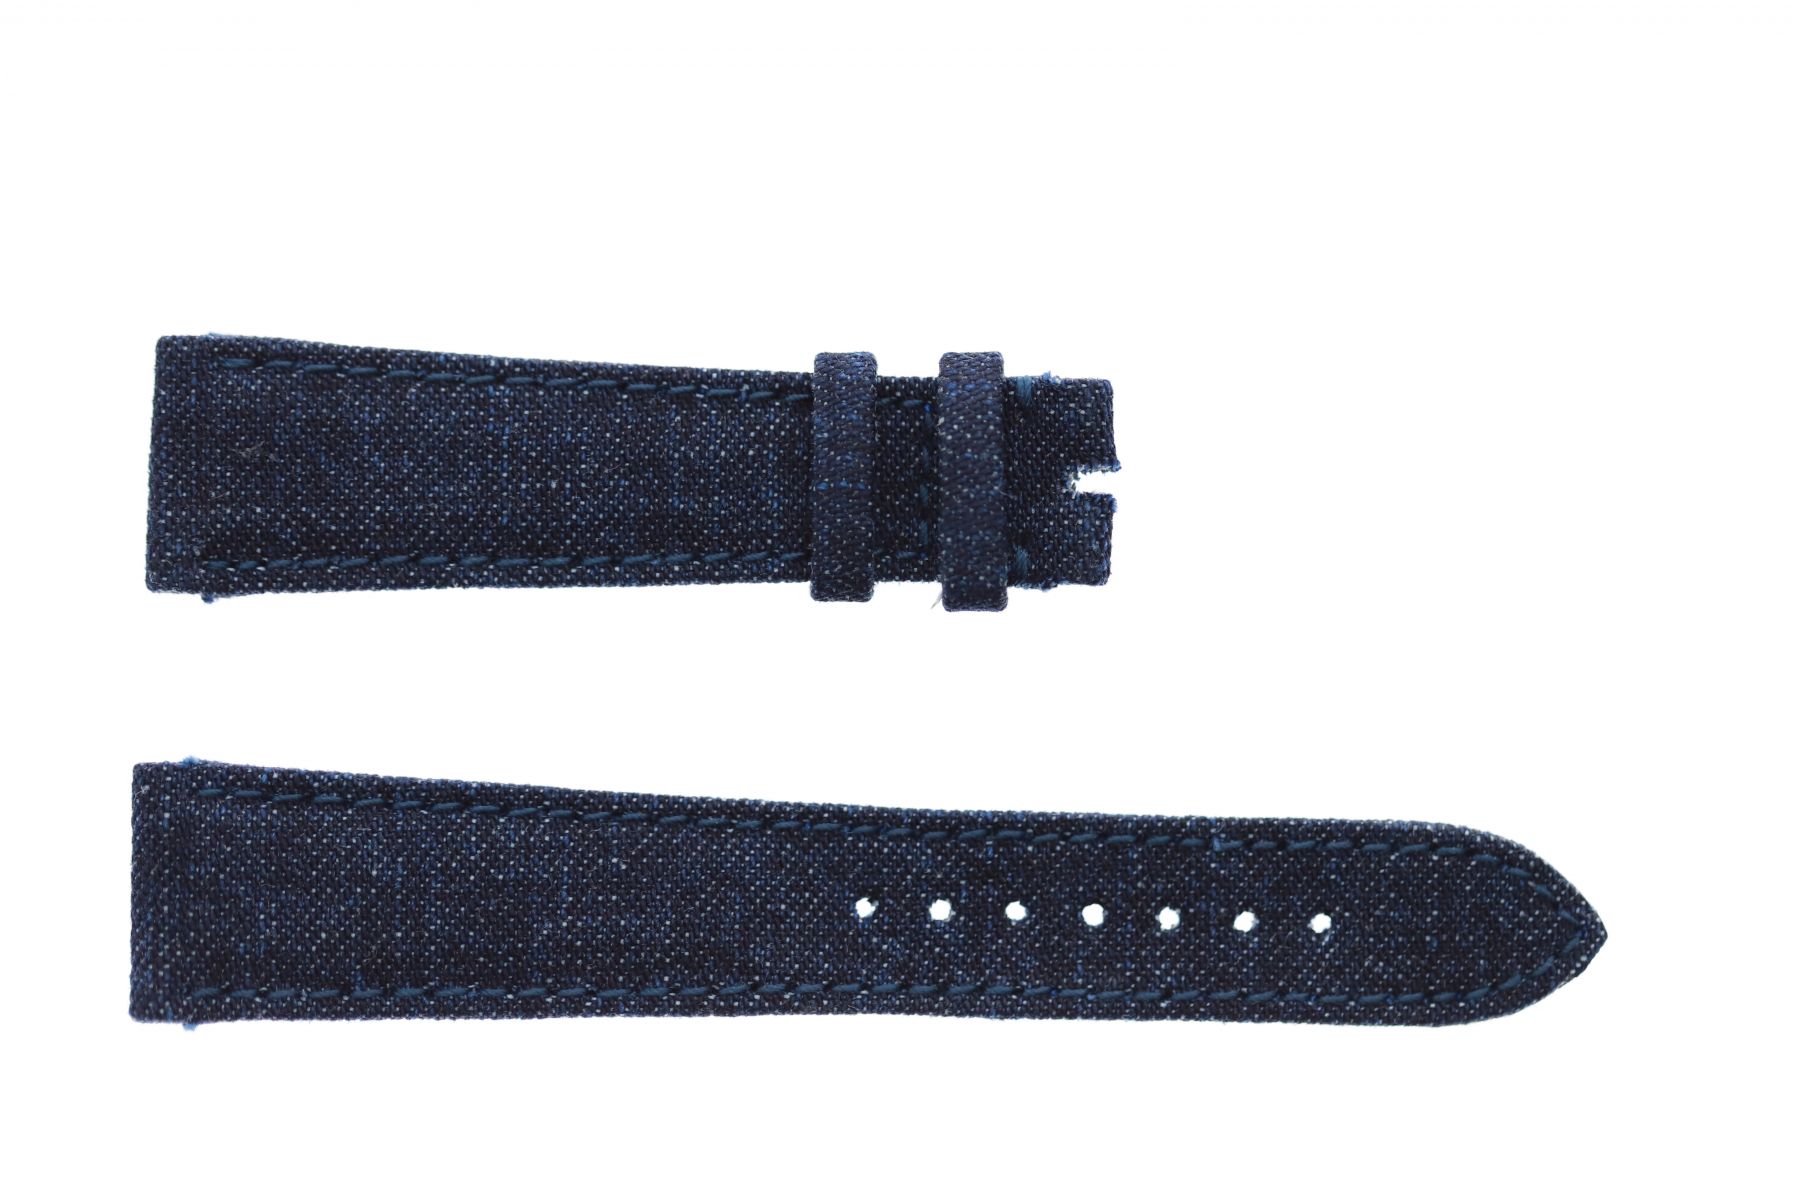 Dark Blue Japanese Denim strap 20mm Rolex Daydate, Dayjust style. On-tone stitching